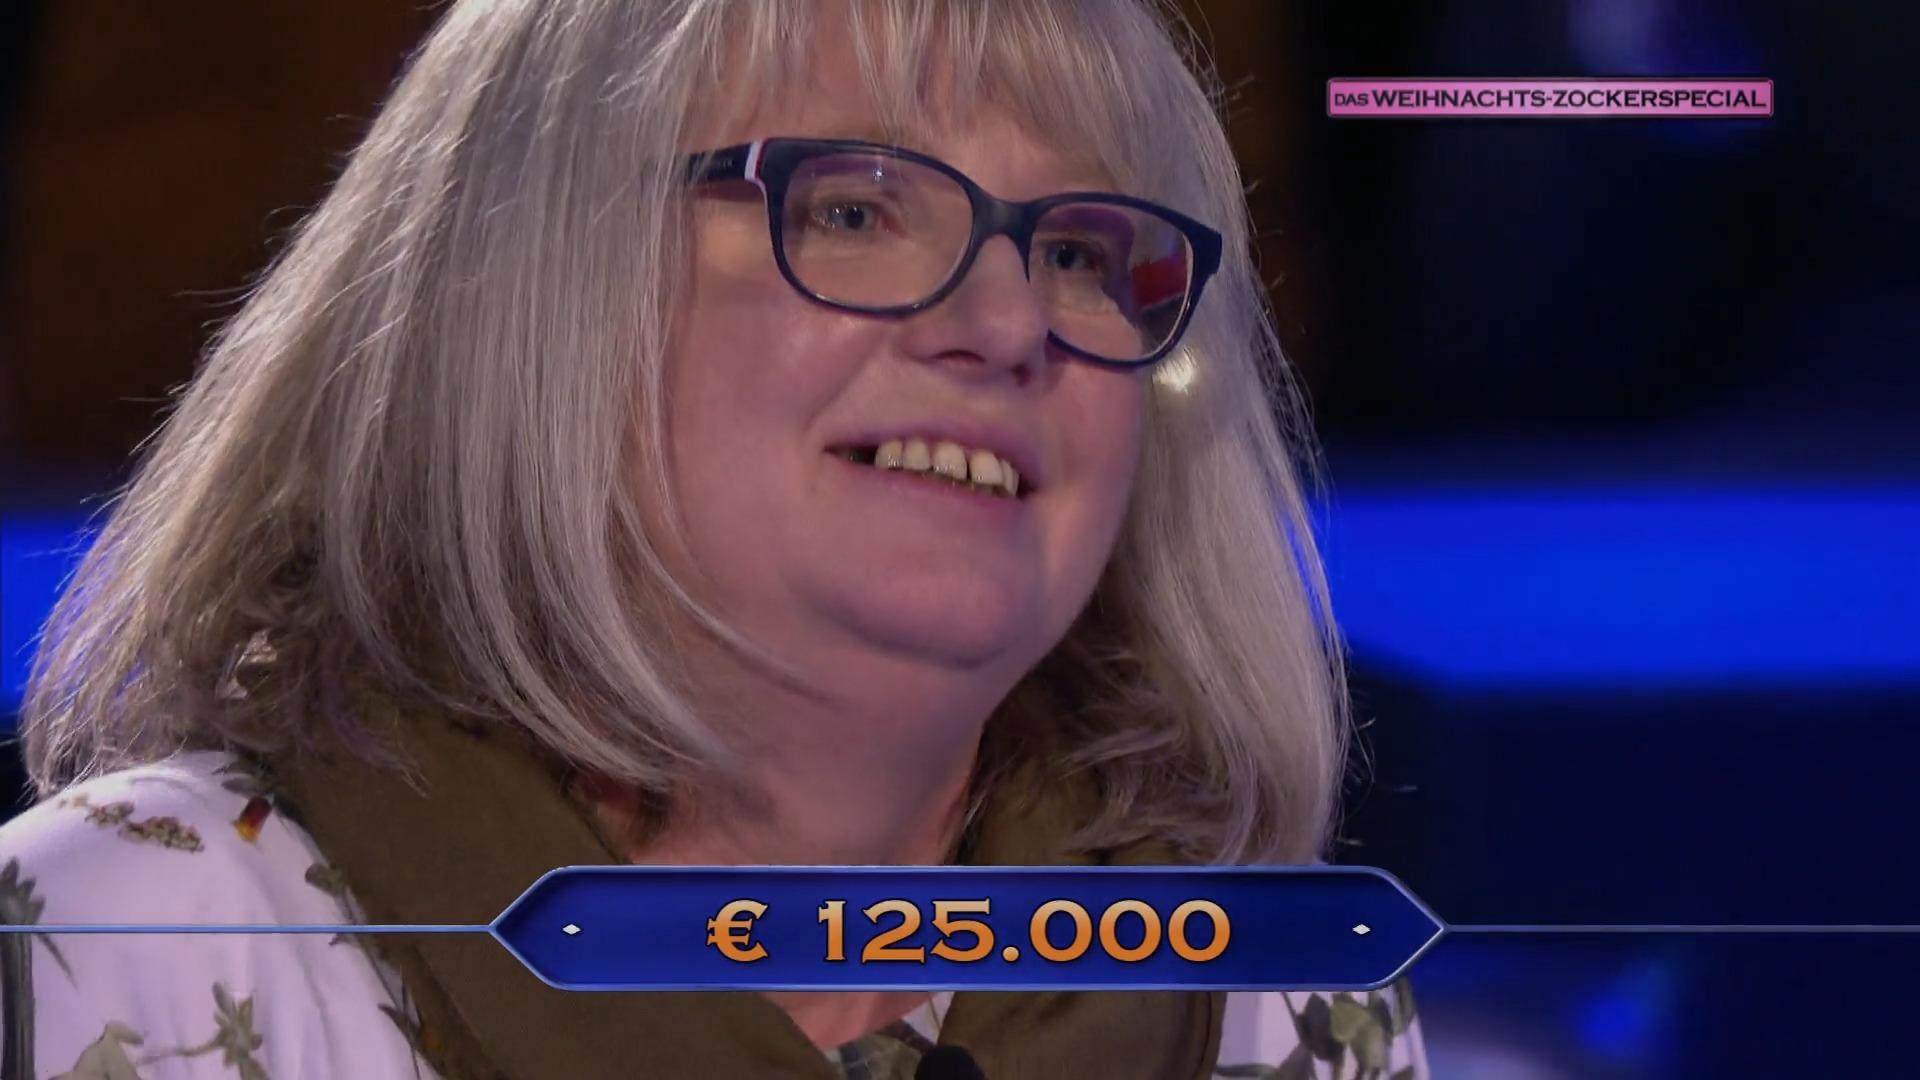 125.000 Euro!  Sie gewinnt den Hauptpreis des speziellen WWM-Weihnachtsspiels des Abends: Alles fließt